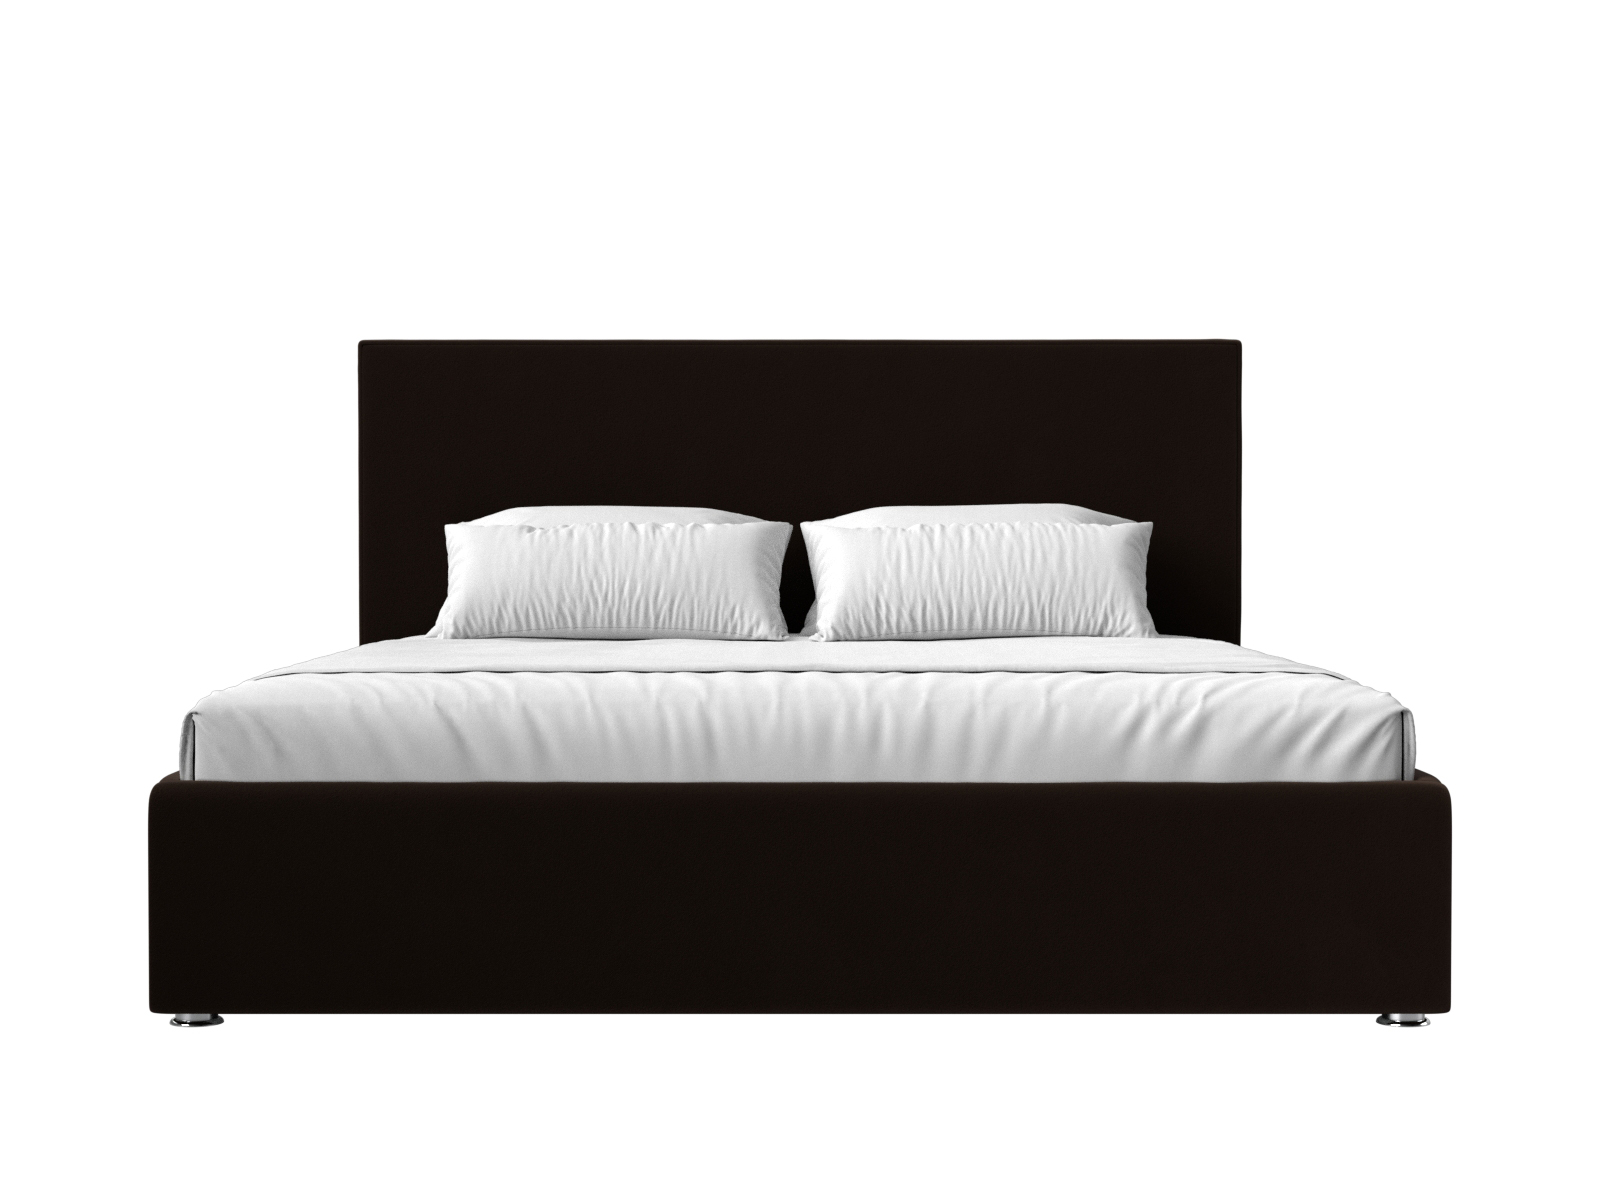 Интерьерная кровать Кариба 160 (Коричневый)